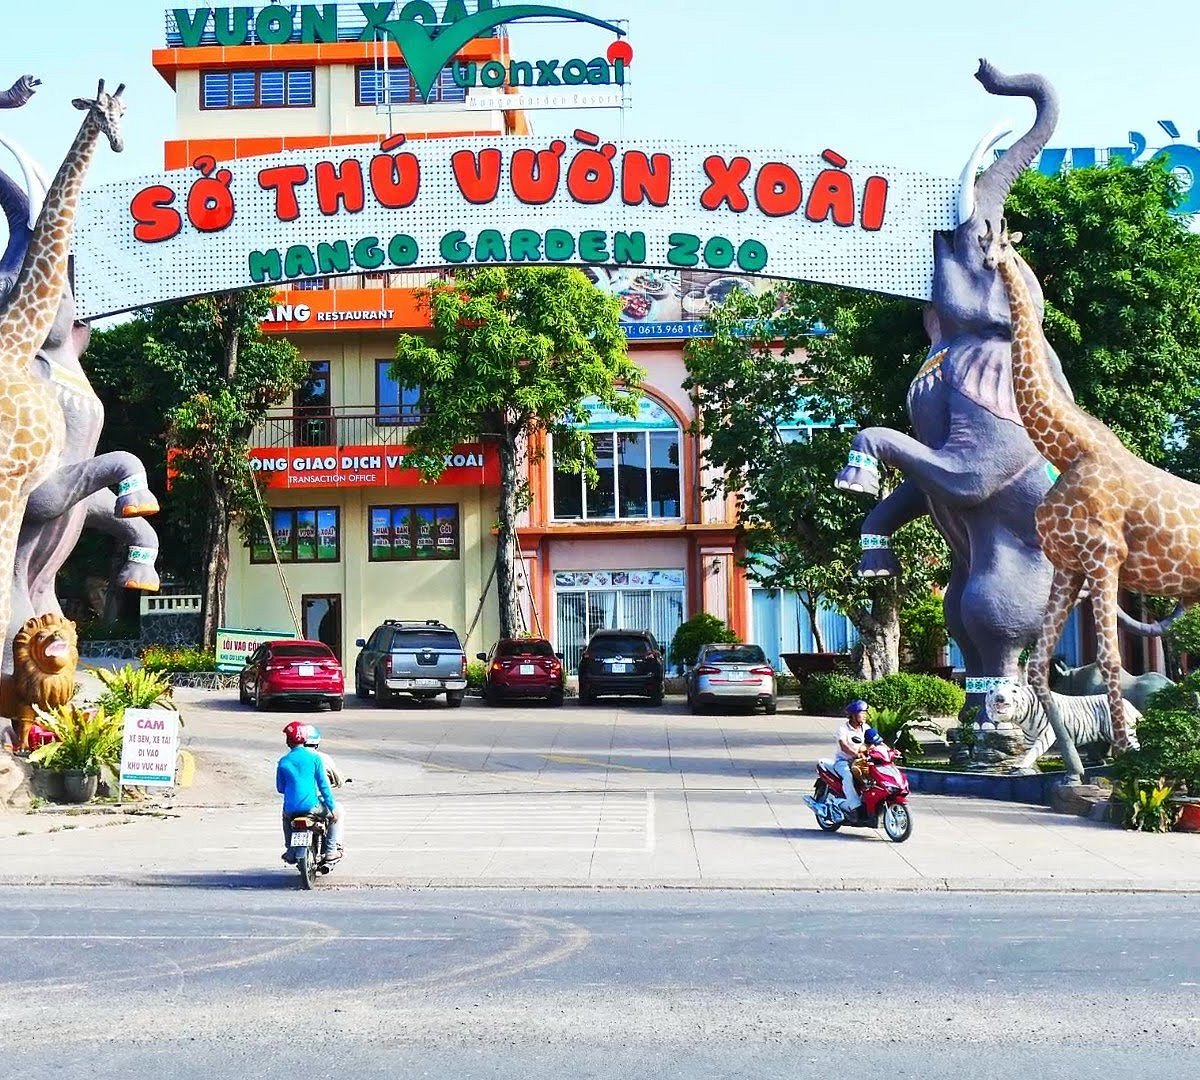 Mango Garden Resort là một trong những khu nghỉ dưỡng đẹp nhất tại Việt Nam. Hình ảnh của khu vườn xoài đầy màu sắc sẽ đem lại cho bạn cảm giác thư giãn và không gian yên tĩnh. 